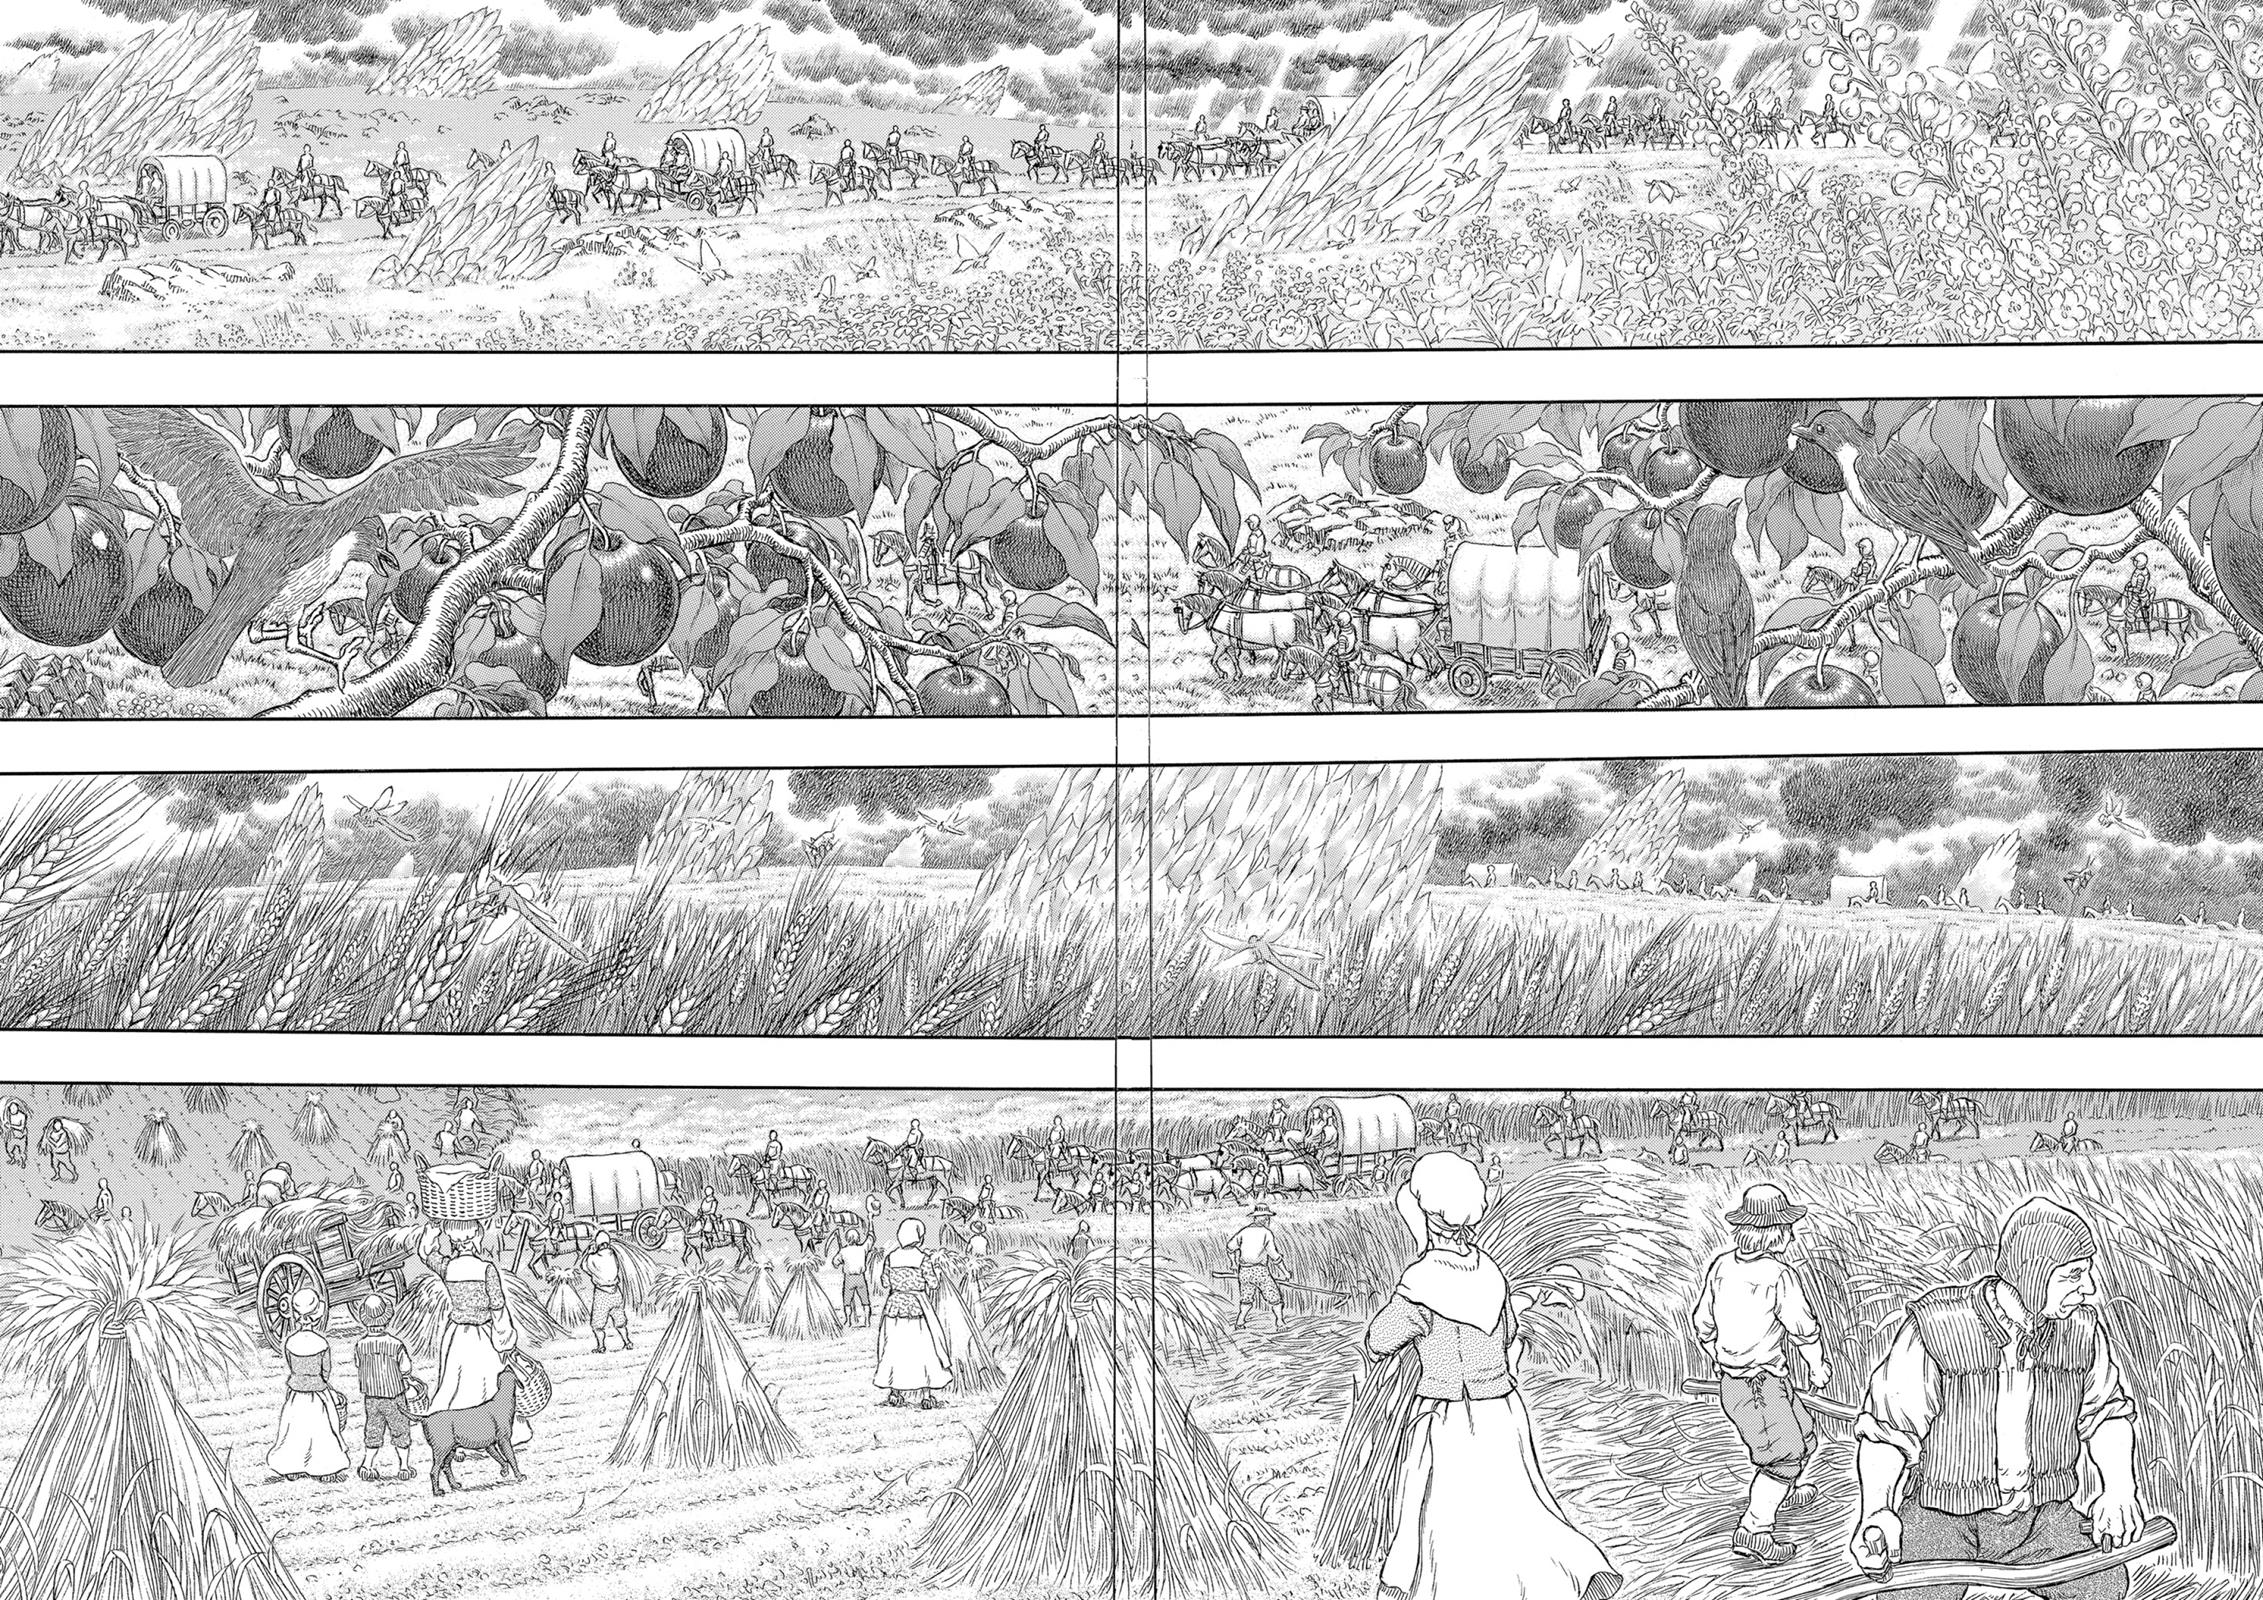 Berserk Manga Chapter 333 image 15